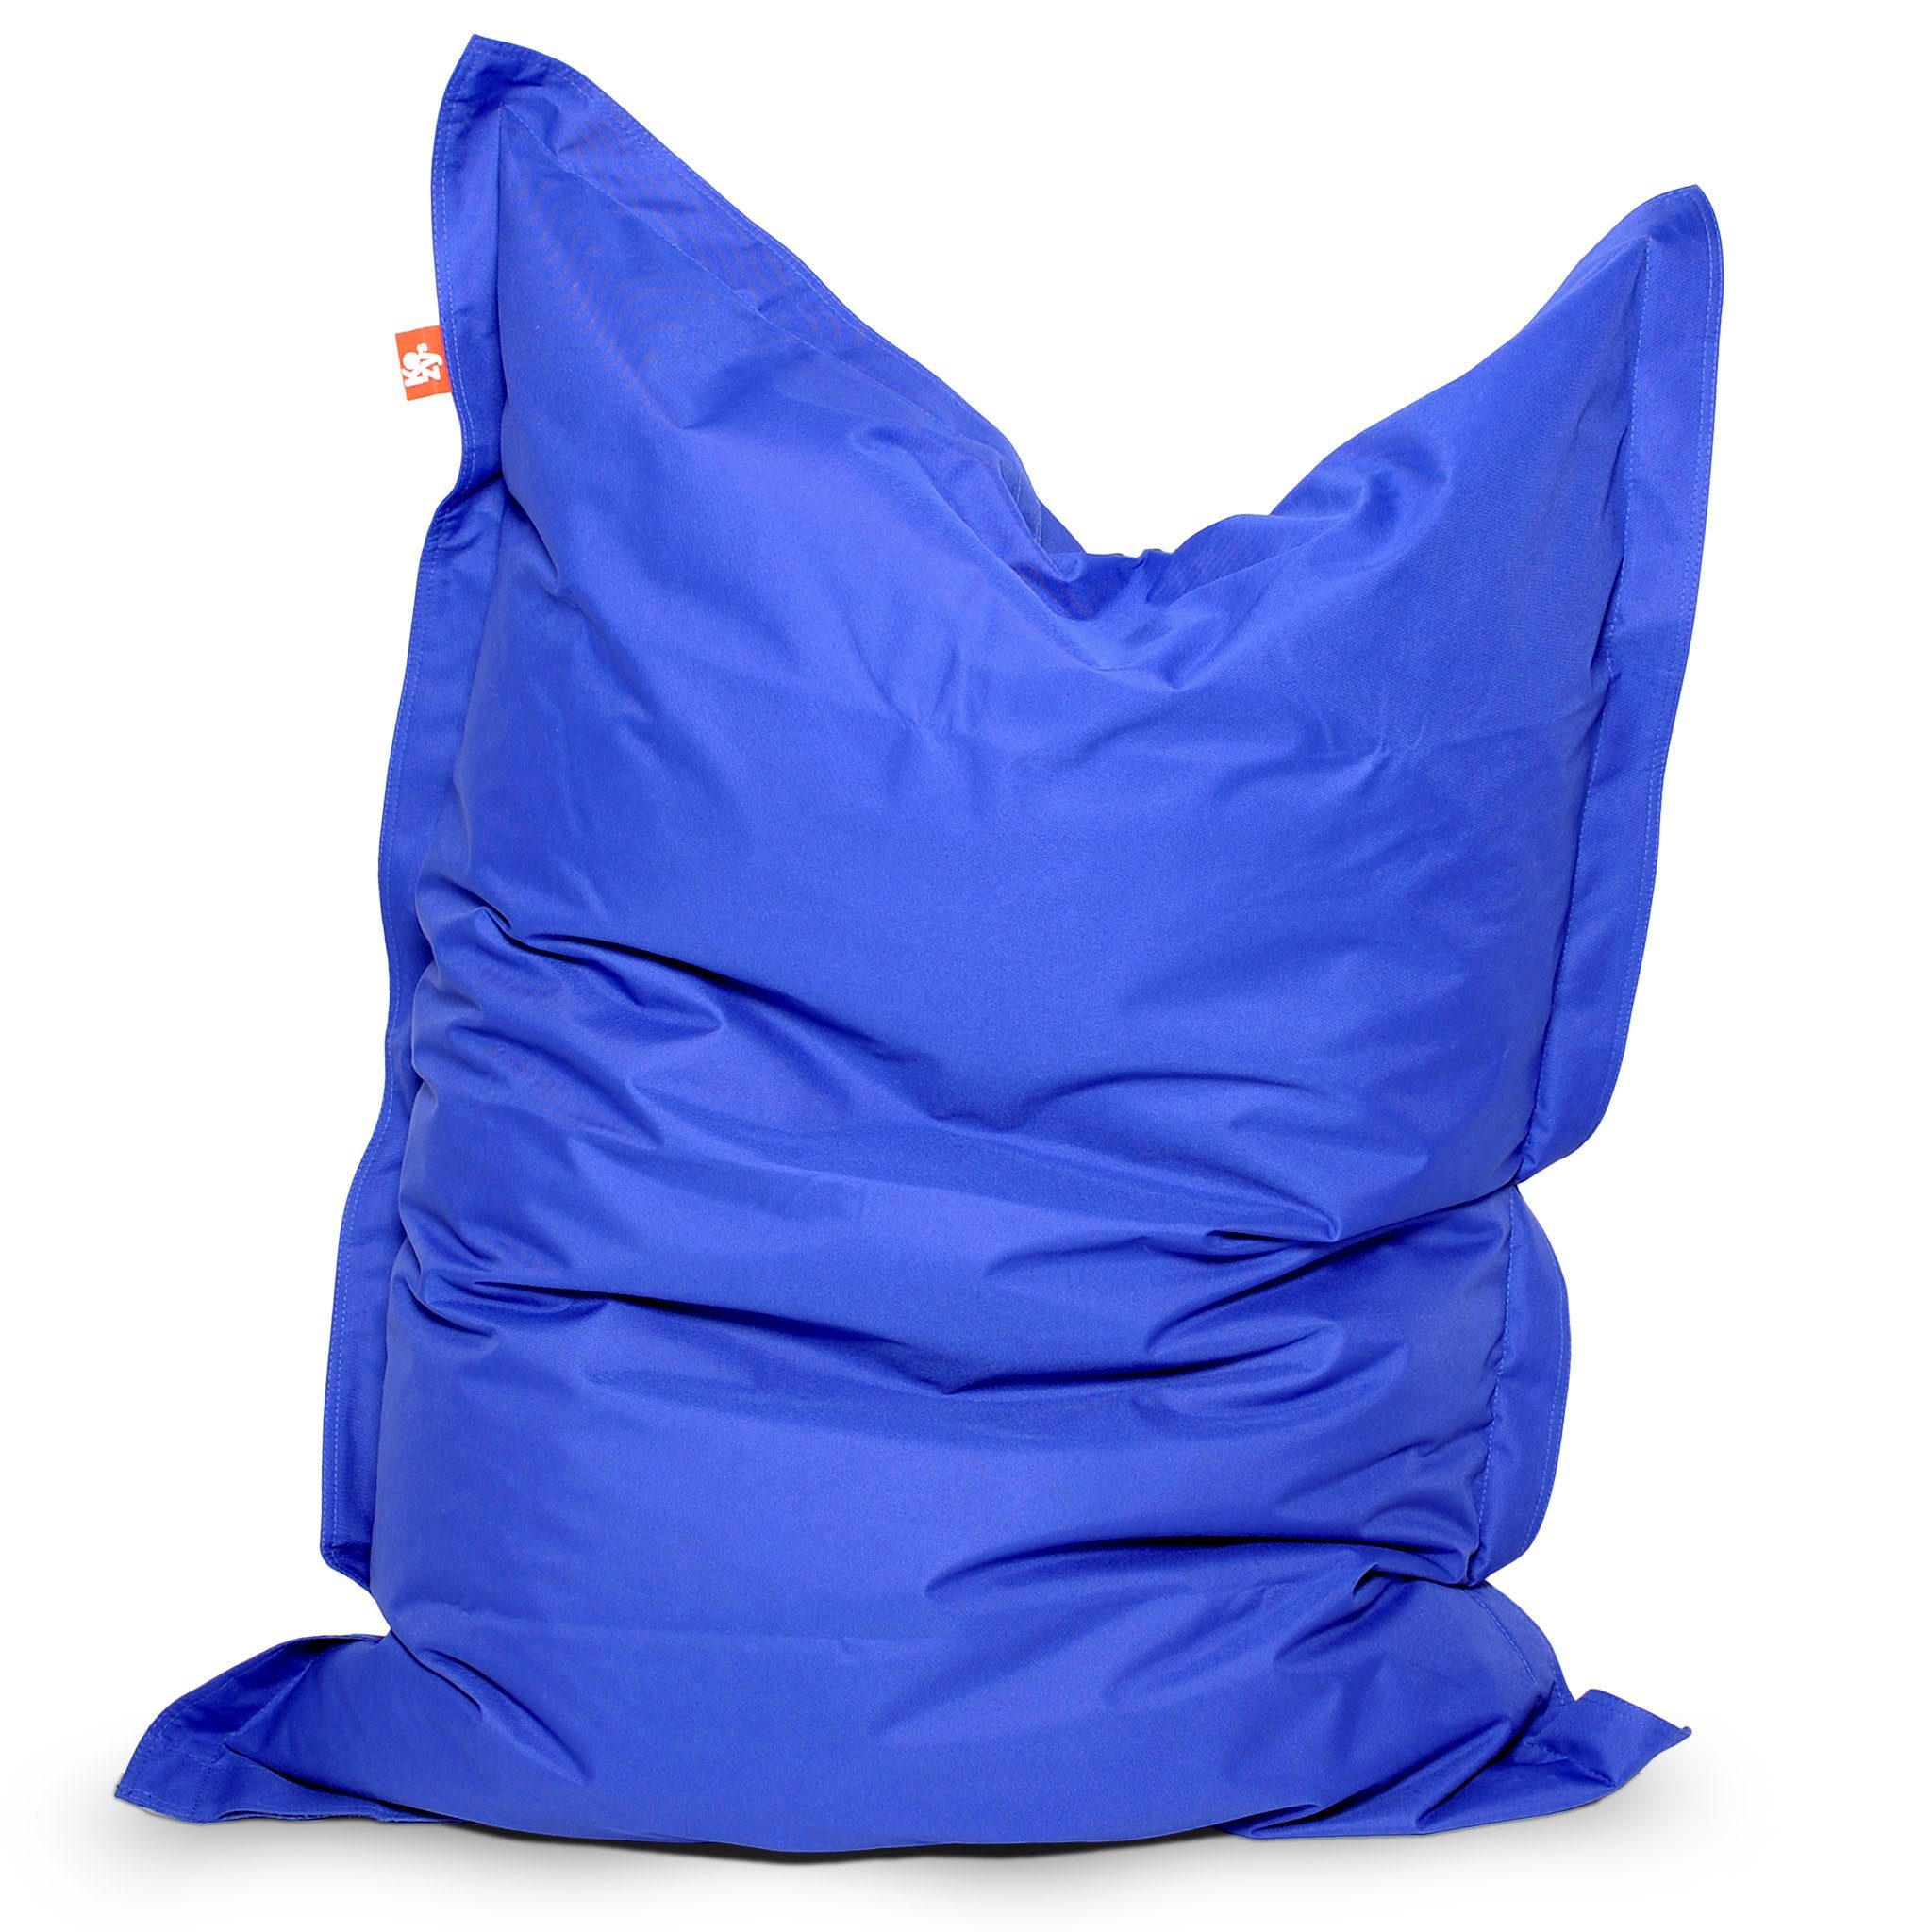 KOZYS Sitzsack Junior Beanbag - Für Kinder & Jugendliche (Stabiles sicheres Design mit EPS-Perlen, Indoor & Outdoor, Garten oder Kinderzimmer), Kindersitzsack Sitzhocker Bodenkissen Blau